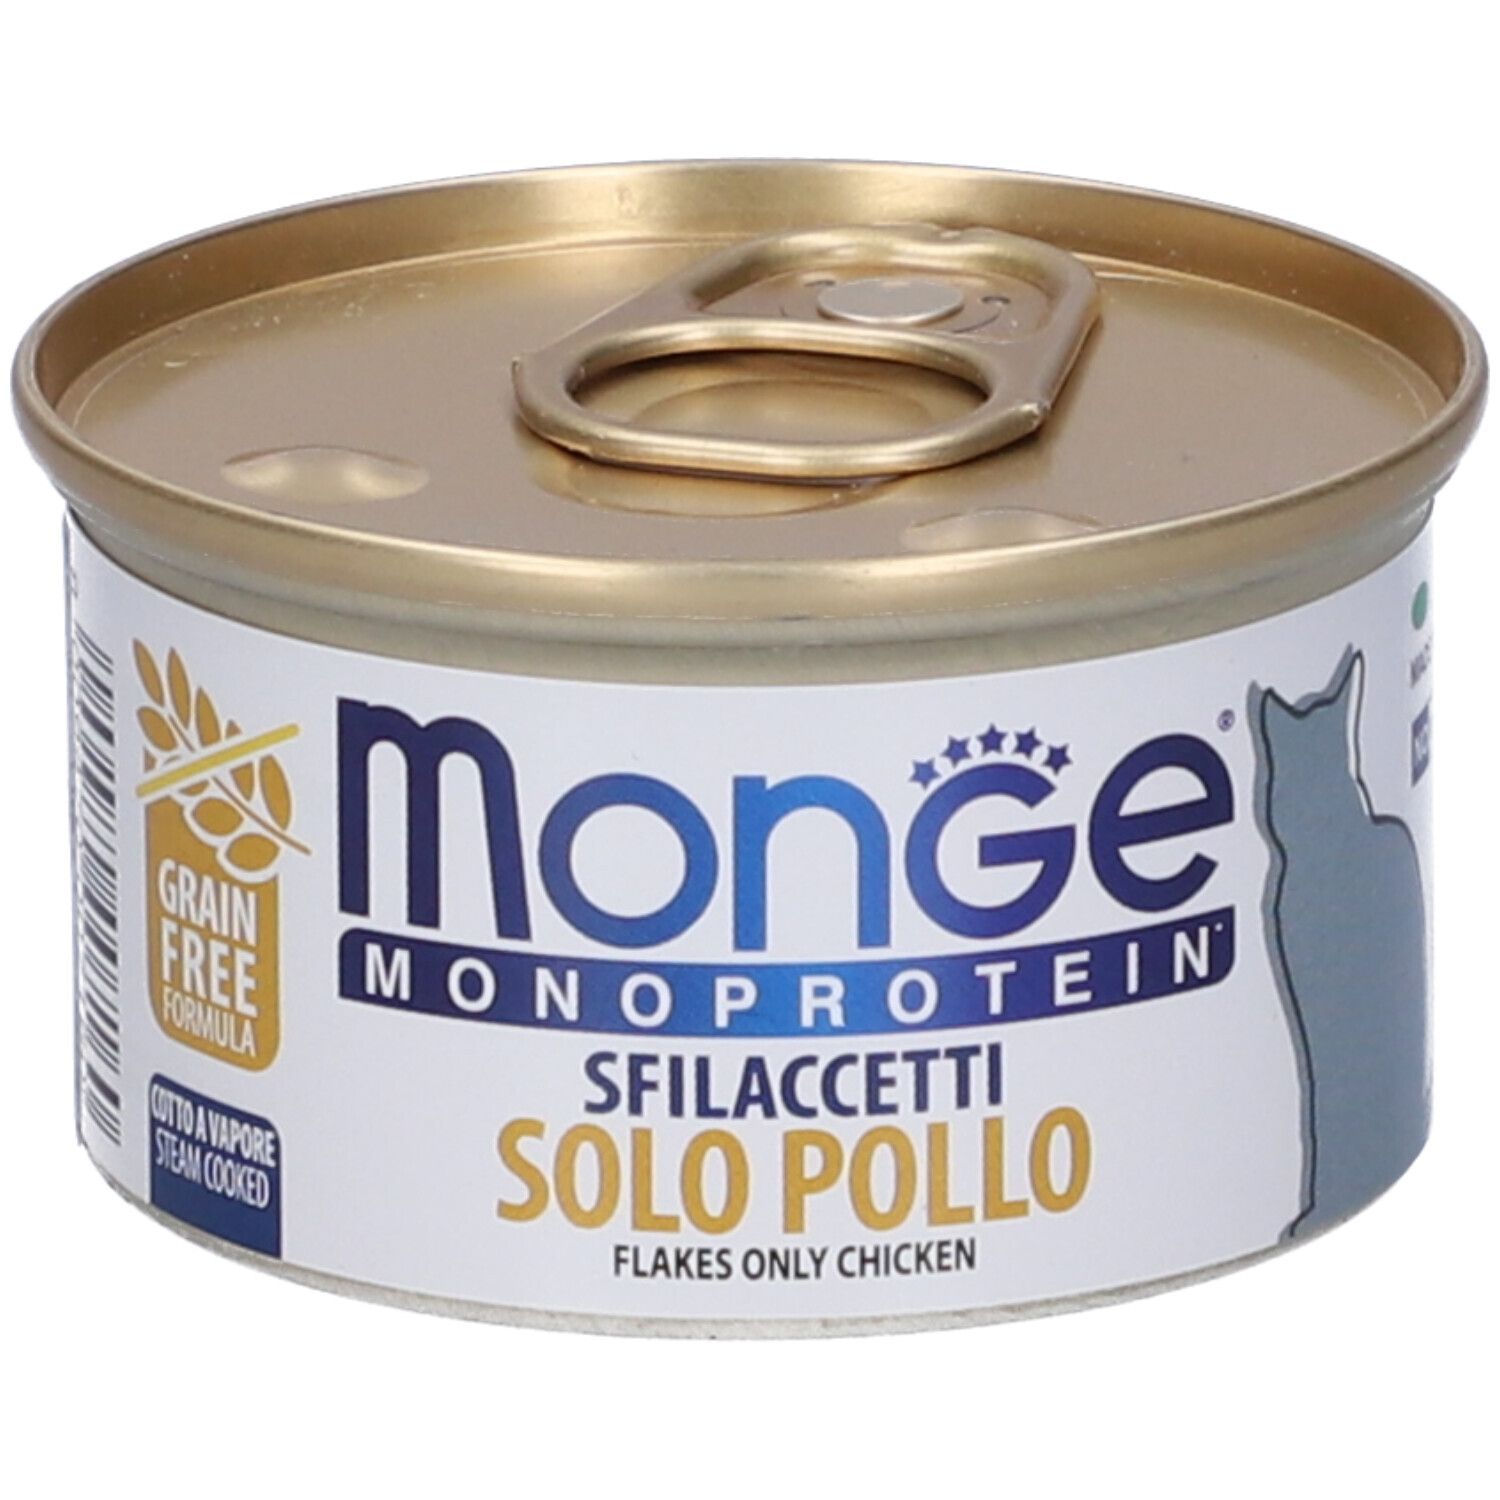 Image of Monge Monoprotein Sfilaccetti Solo Pollo